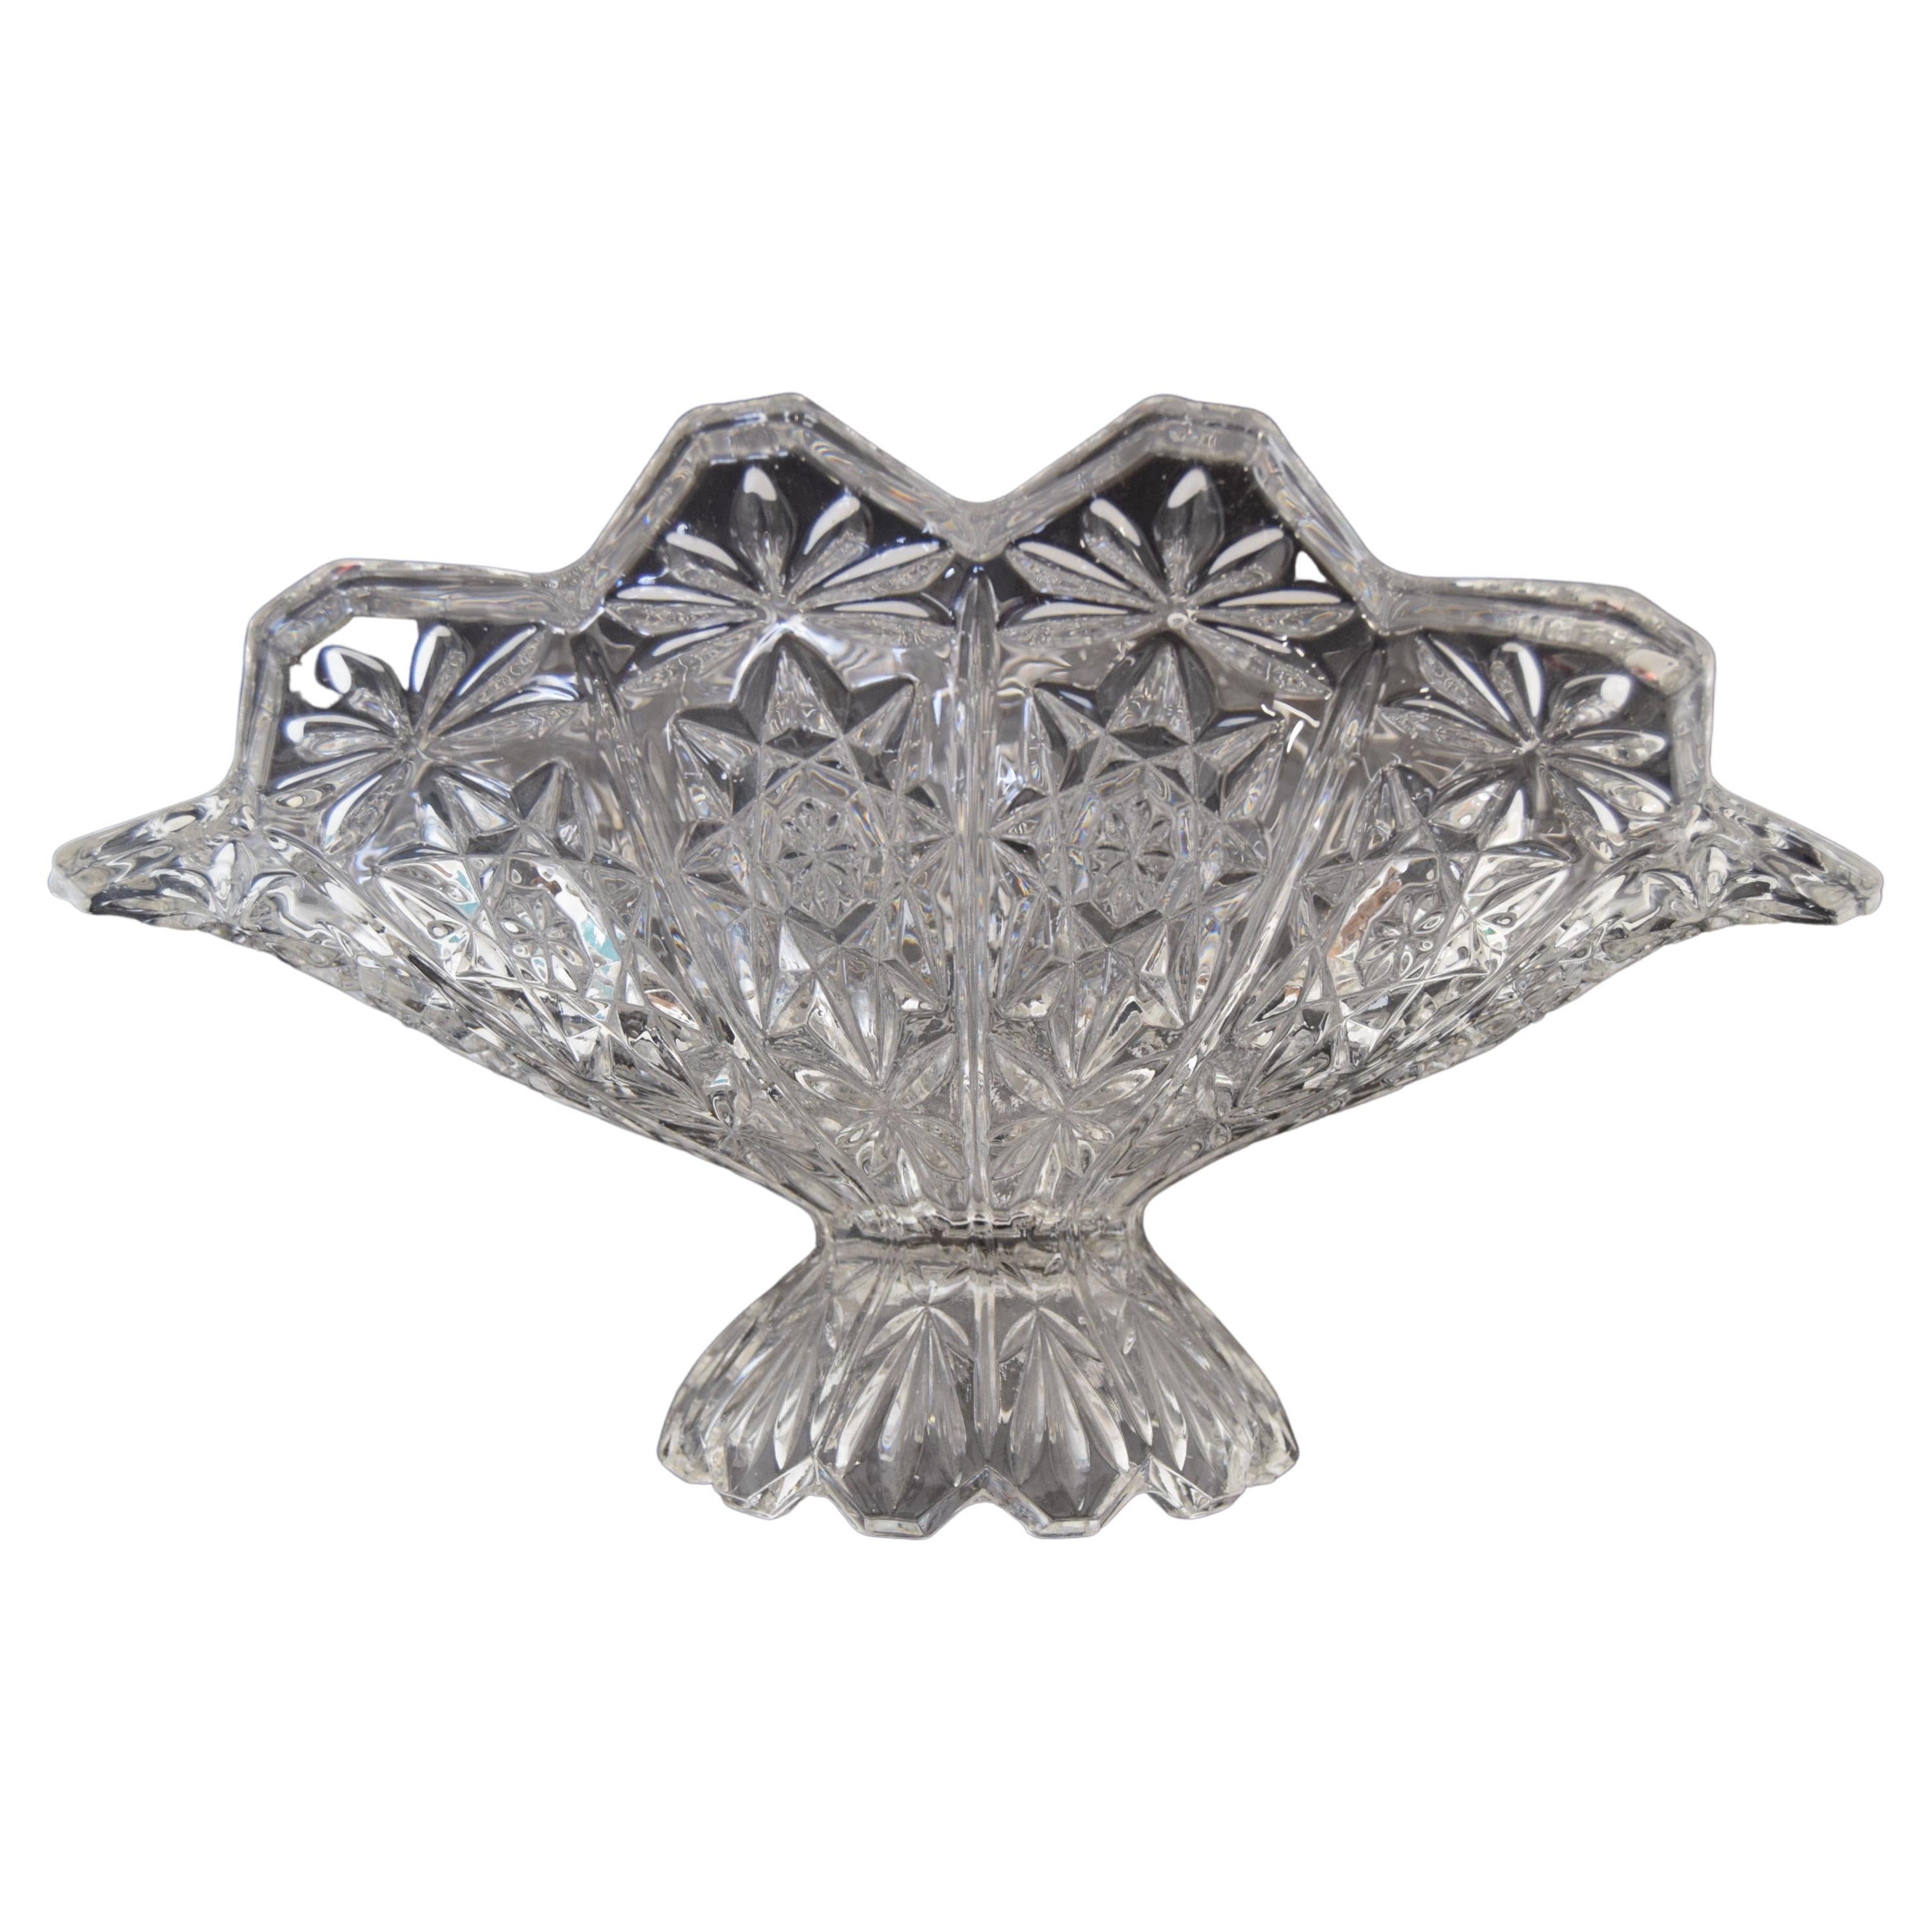 Vintage Crystal Glass Bowl, Glasswork Novy Bor, 1950's.